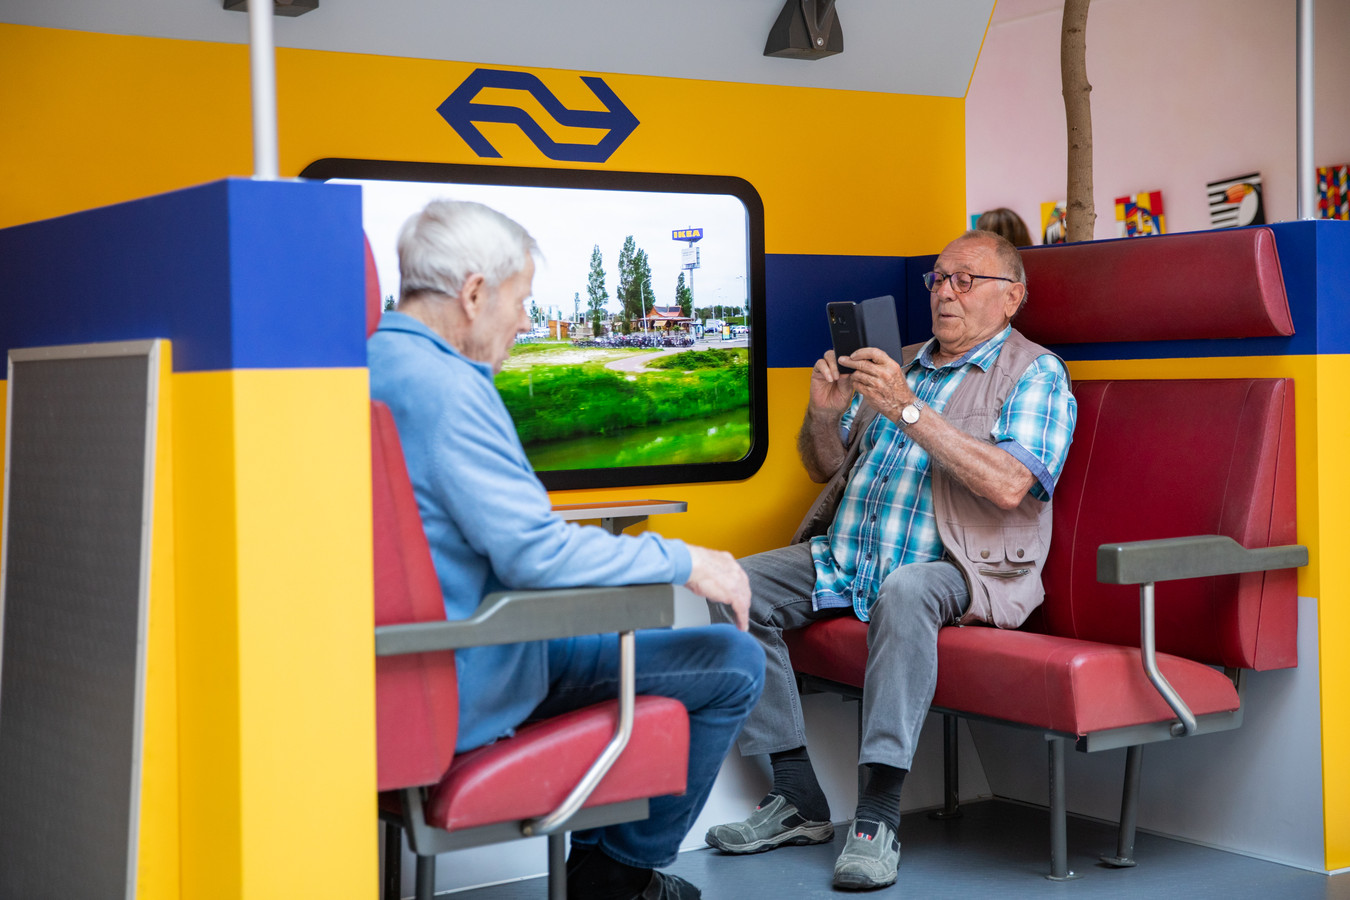 Speciaal voor mensen met dementie in verpleeghuizen ontwikkelde NS de Hoofdreiscoupé zodat ze voor hun gevoel een treinreis kunnen maken.